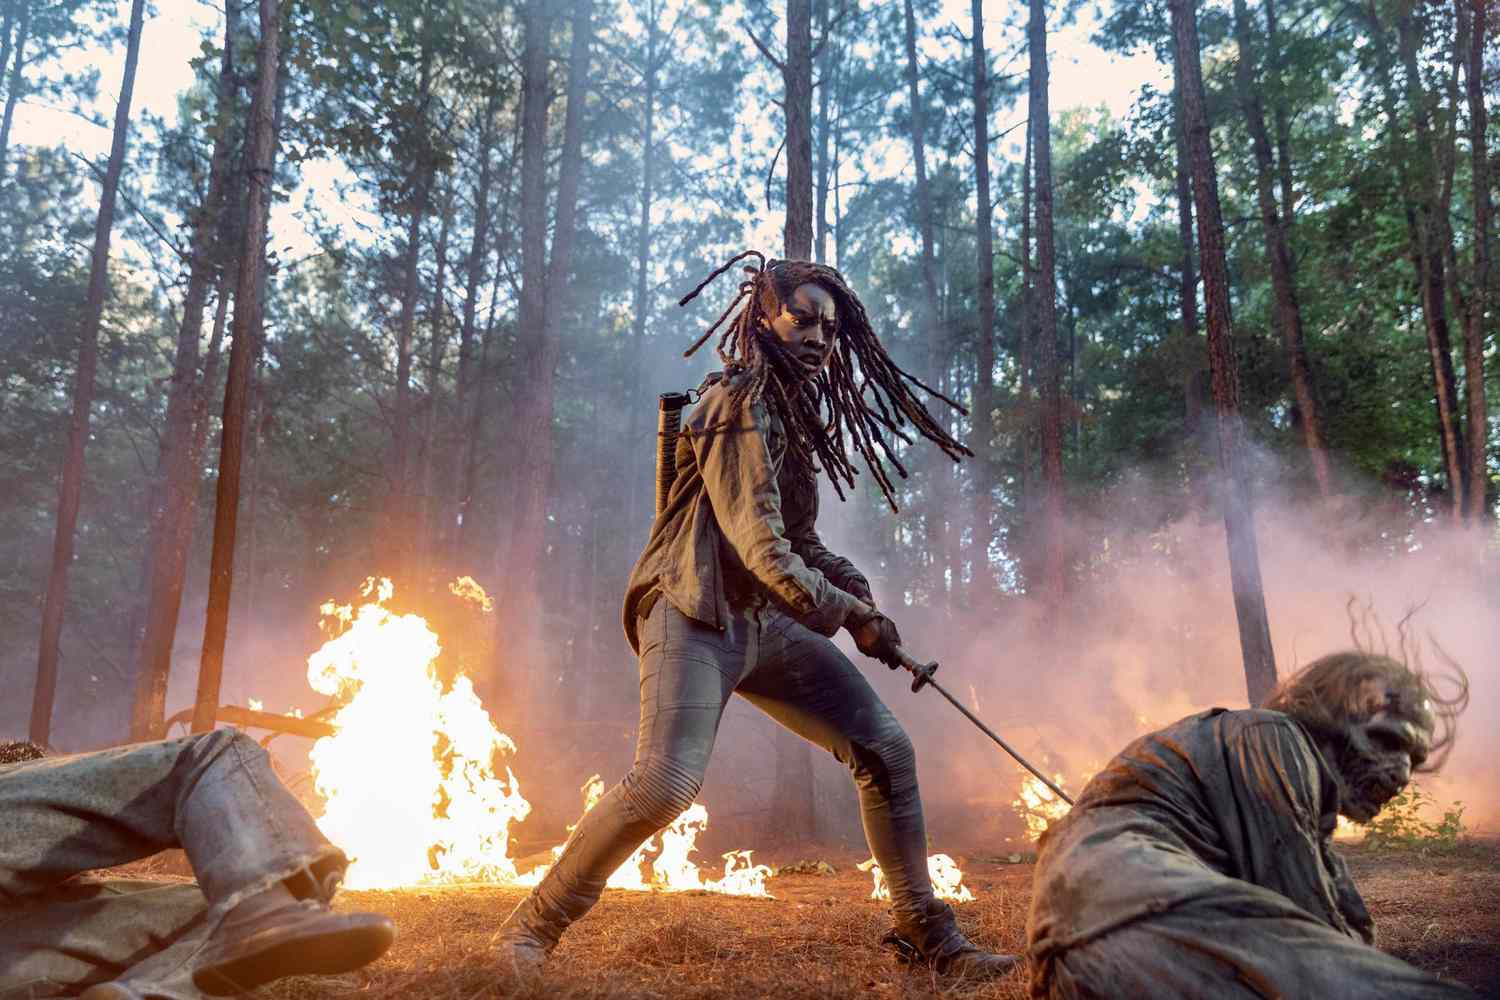 vocaal moordenaar voor The Walking Dead is having a creative renaissance | EW.com